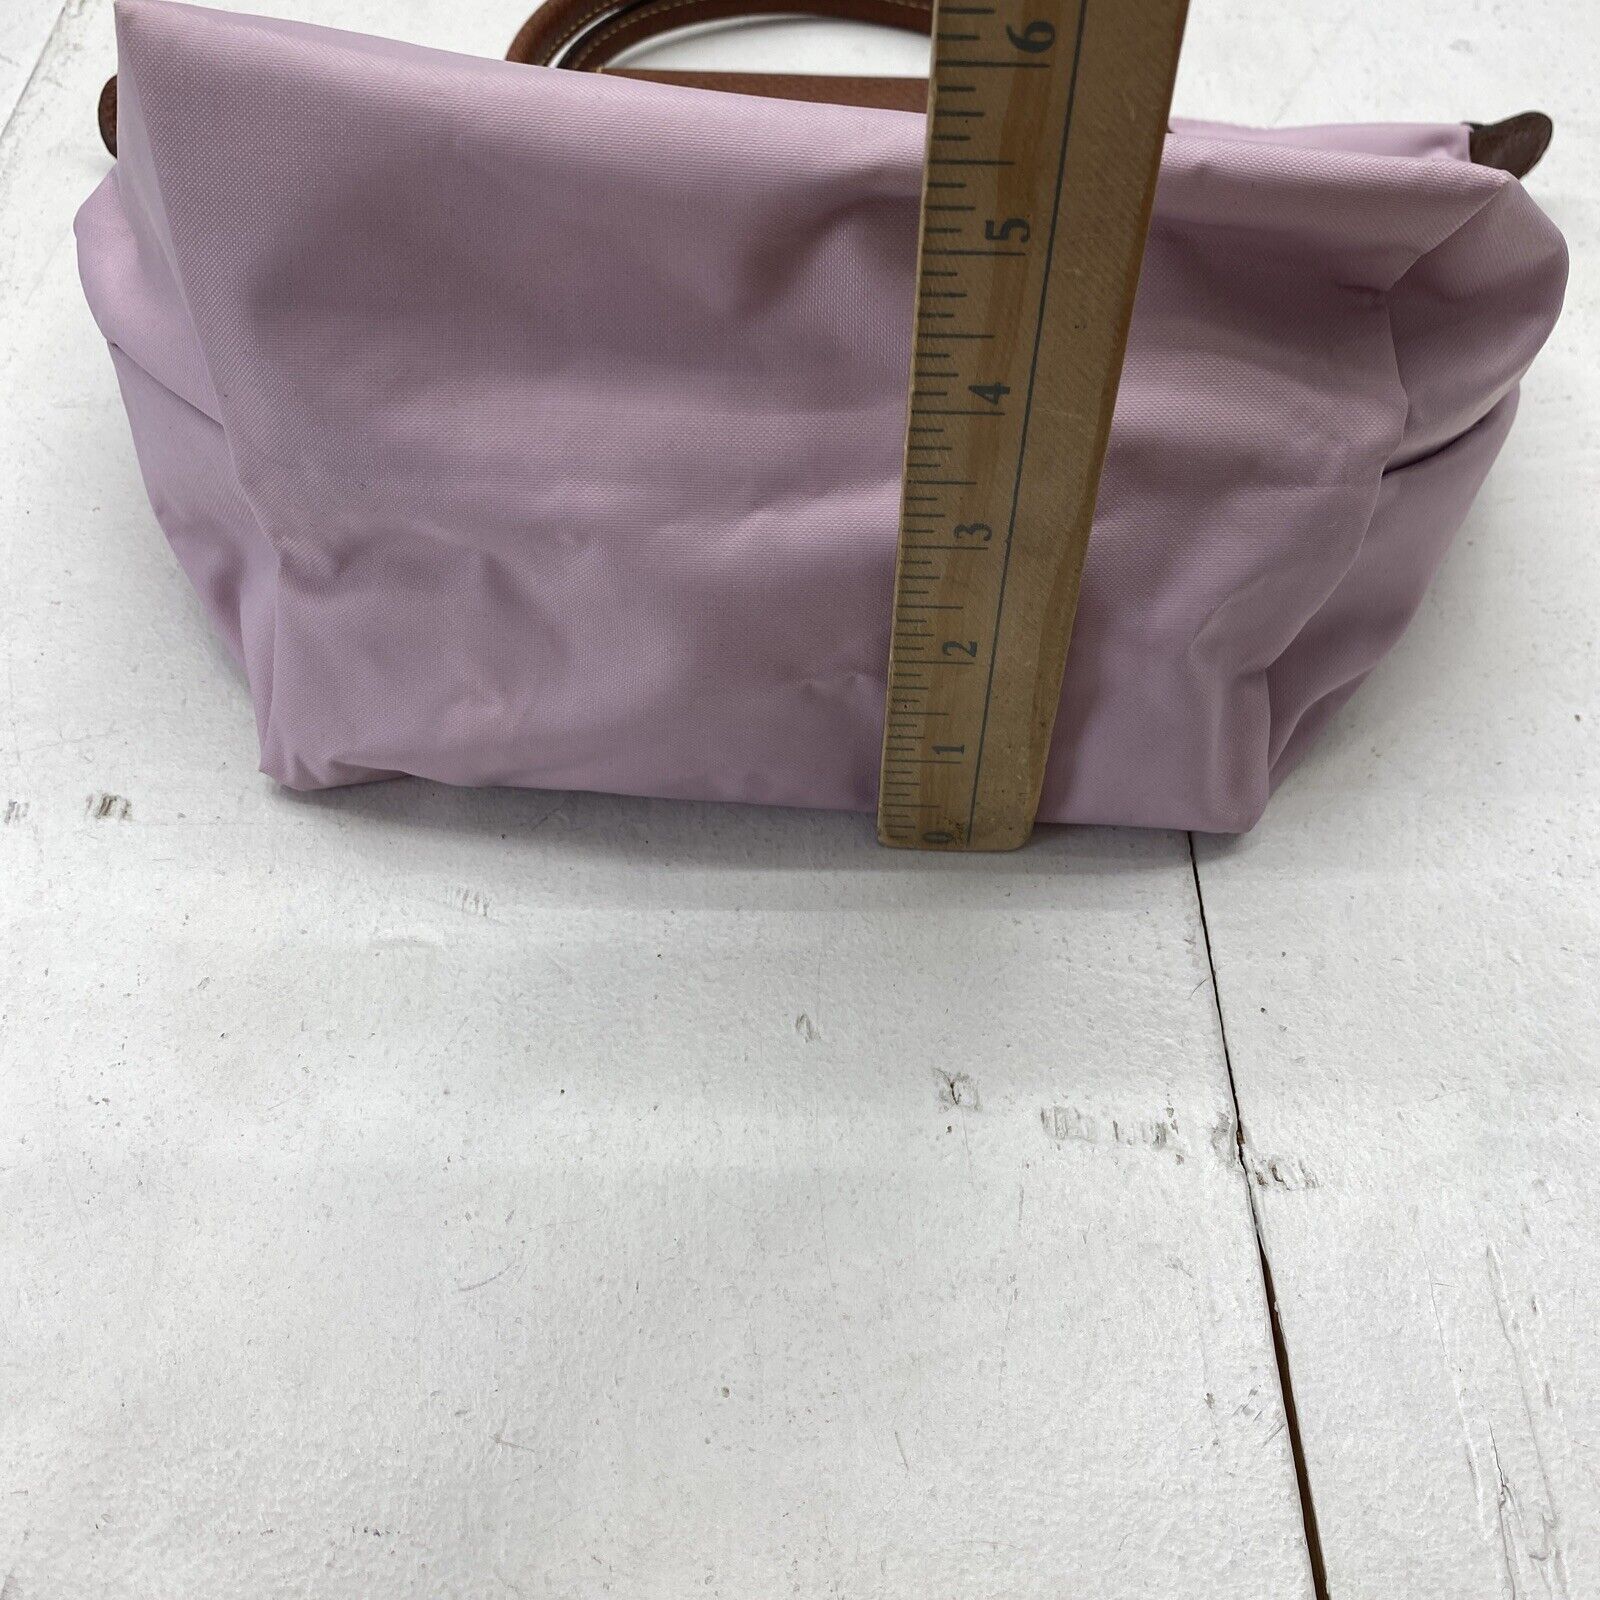 Pliage tote Longchamp Pink in Polyamide - 31010083